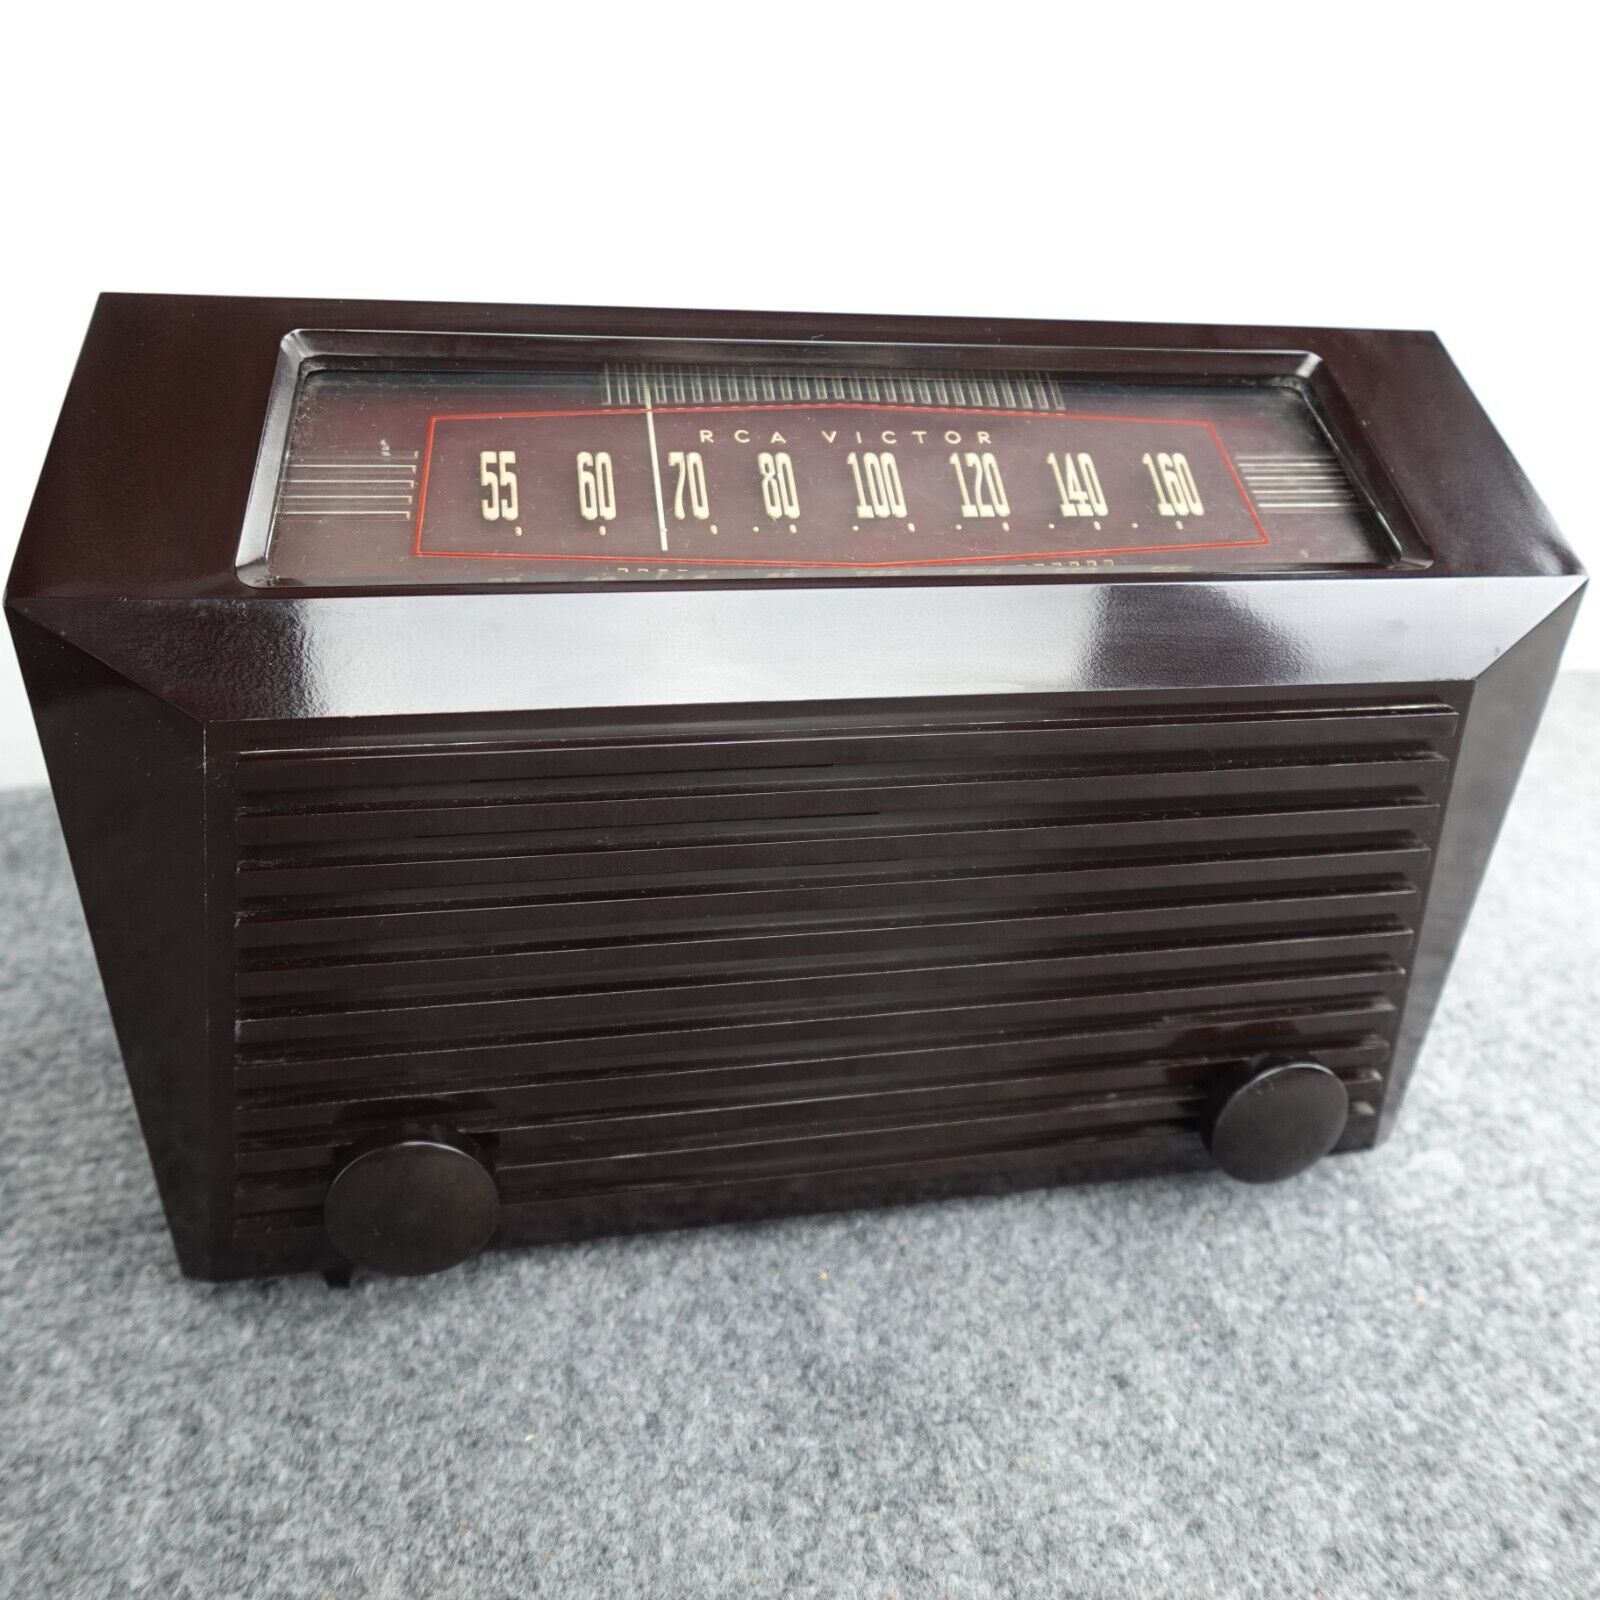 RCA Victor Tube Radio AM Model 9X641 Tabletop 1950 Works Bakelite Loud Volume